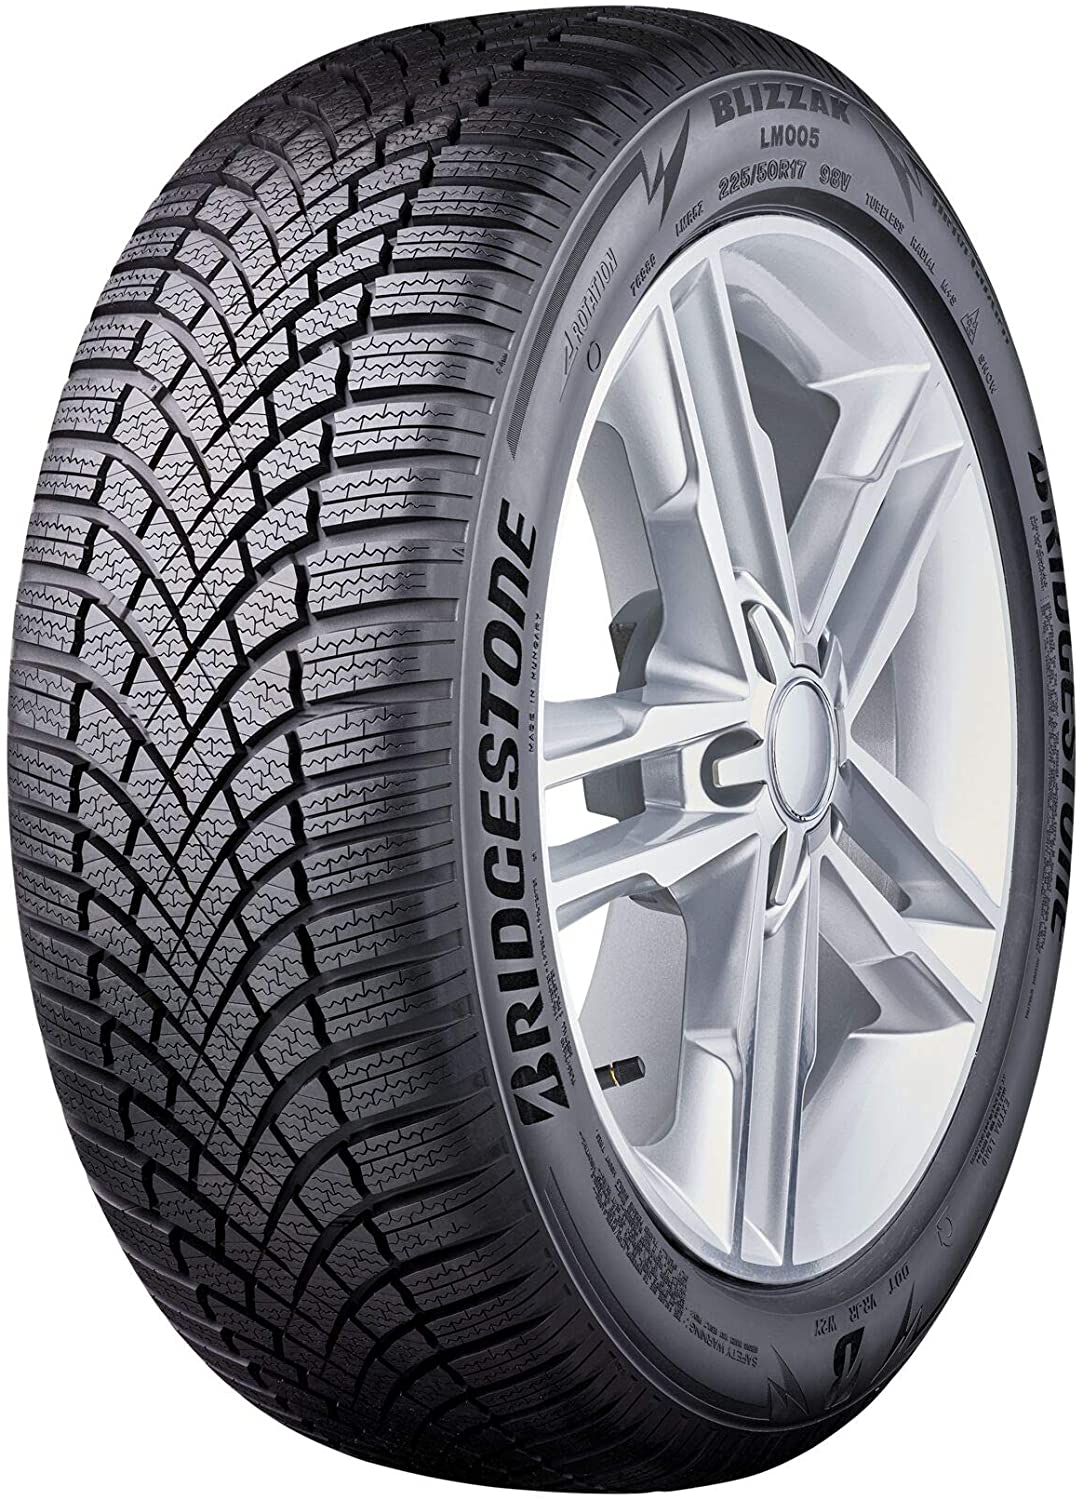 Bridgestone Blizzak LM005 Reviews Tests Tyre and 